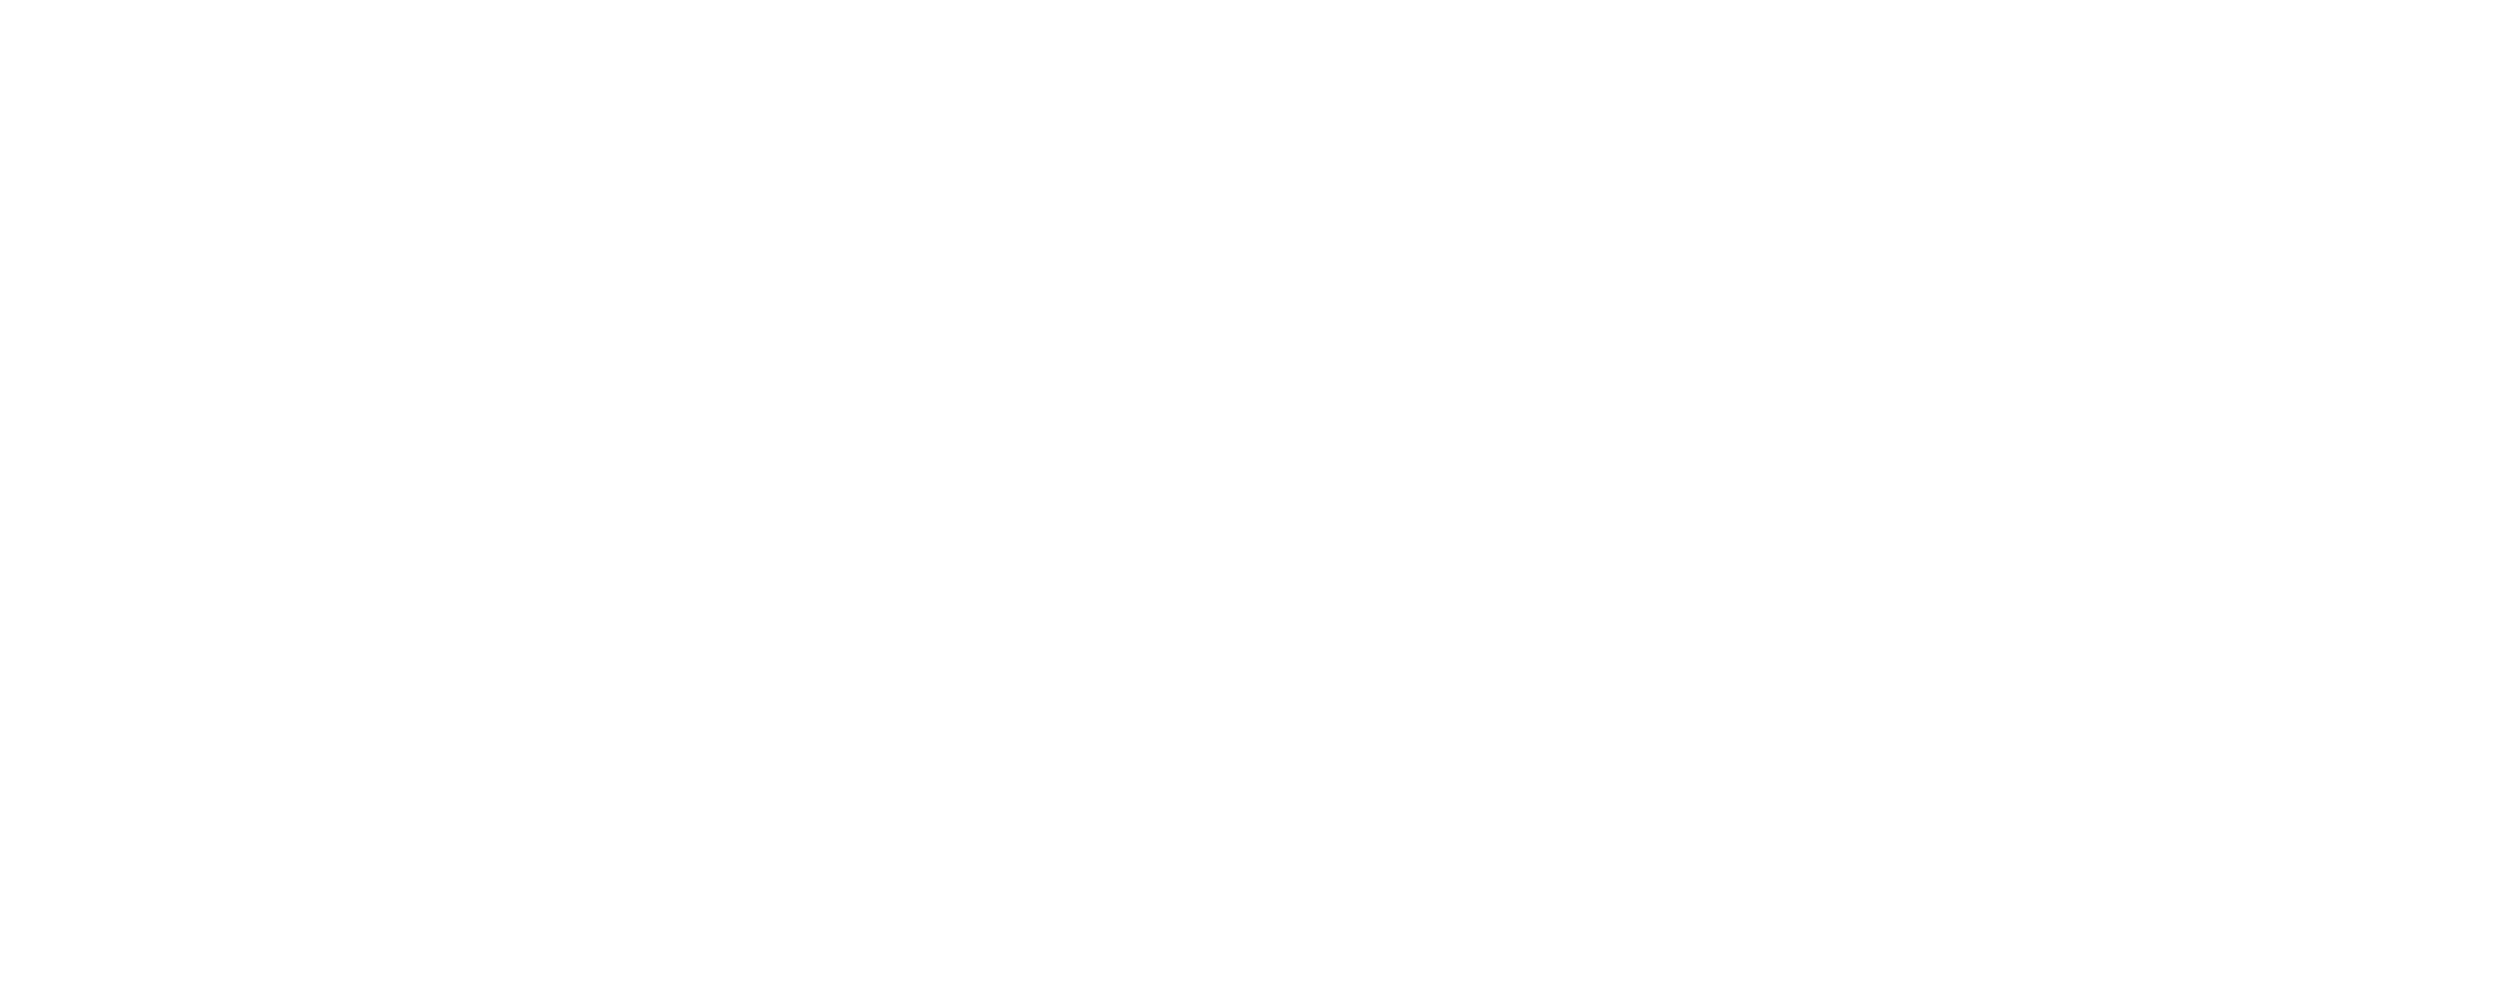 Simoné Sleepwear